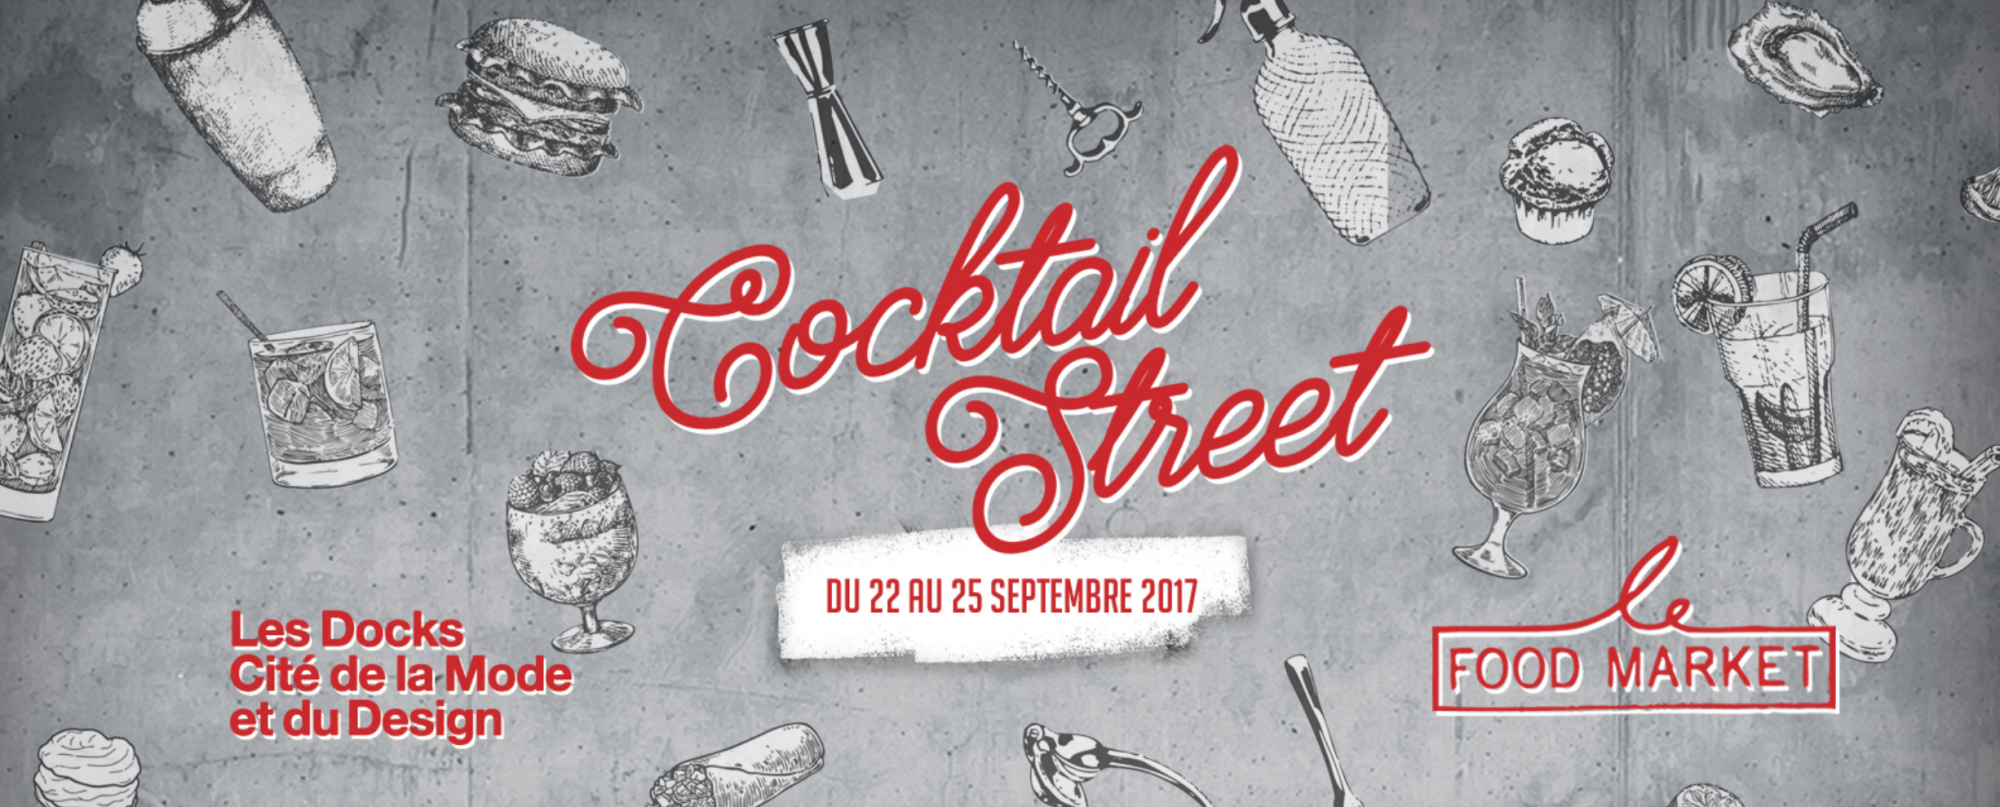 La Cocktail Street, du 22 au 25 septembre 2017 sur Les Docks de la Cité de la Mode et du Design - Photo 2